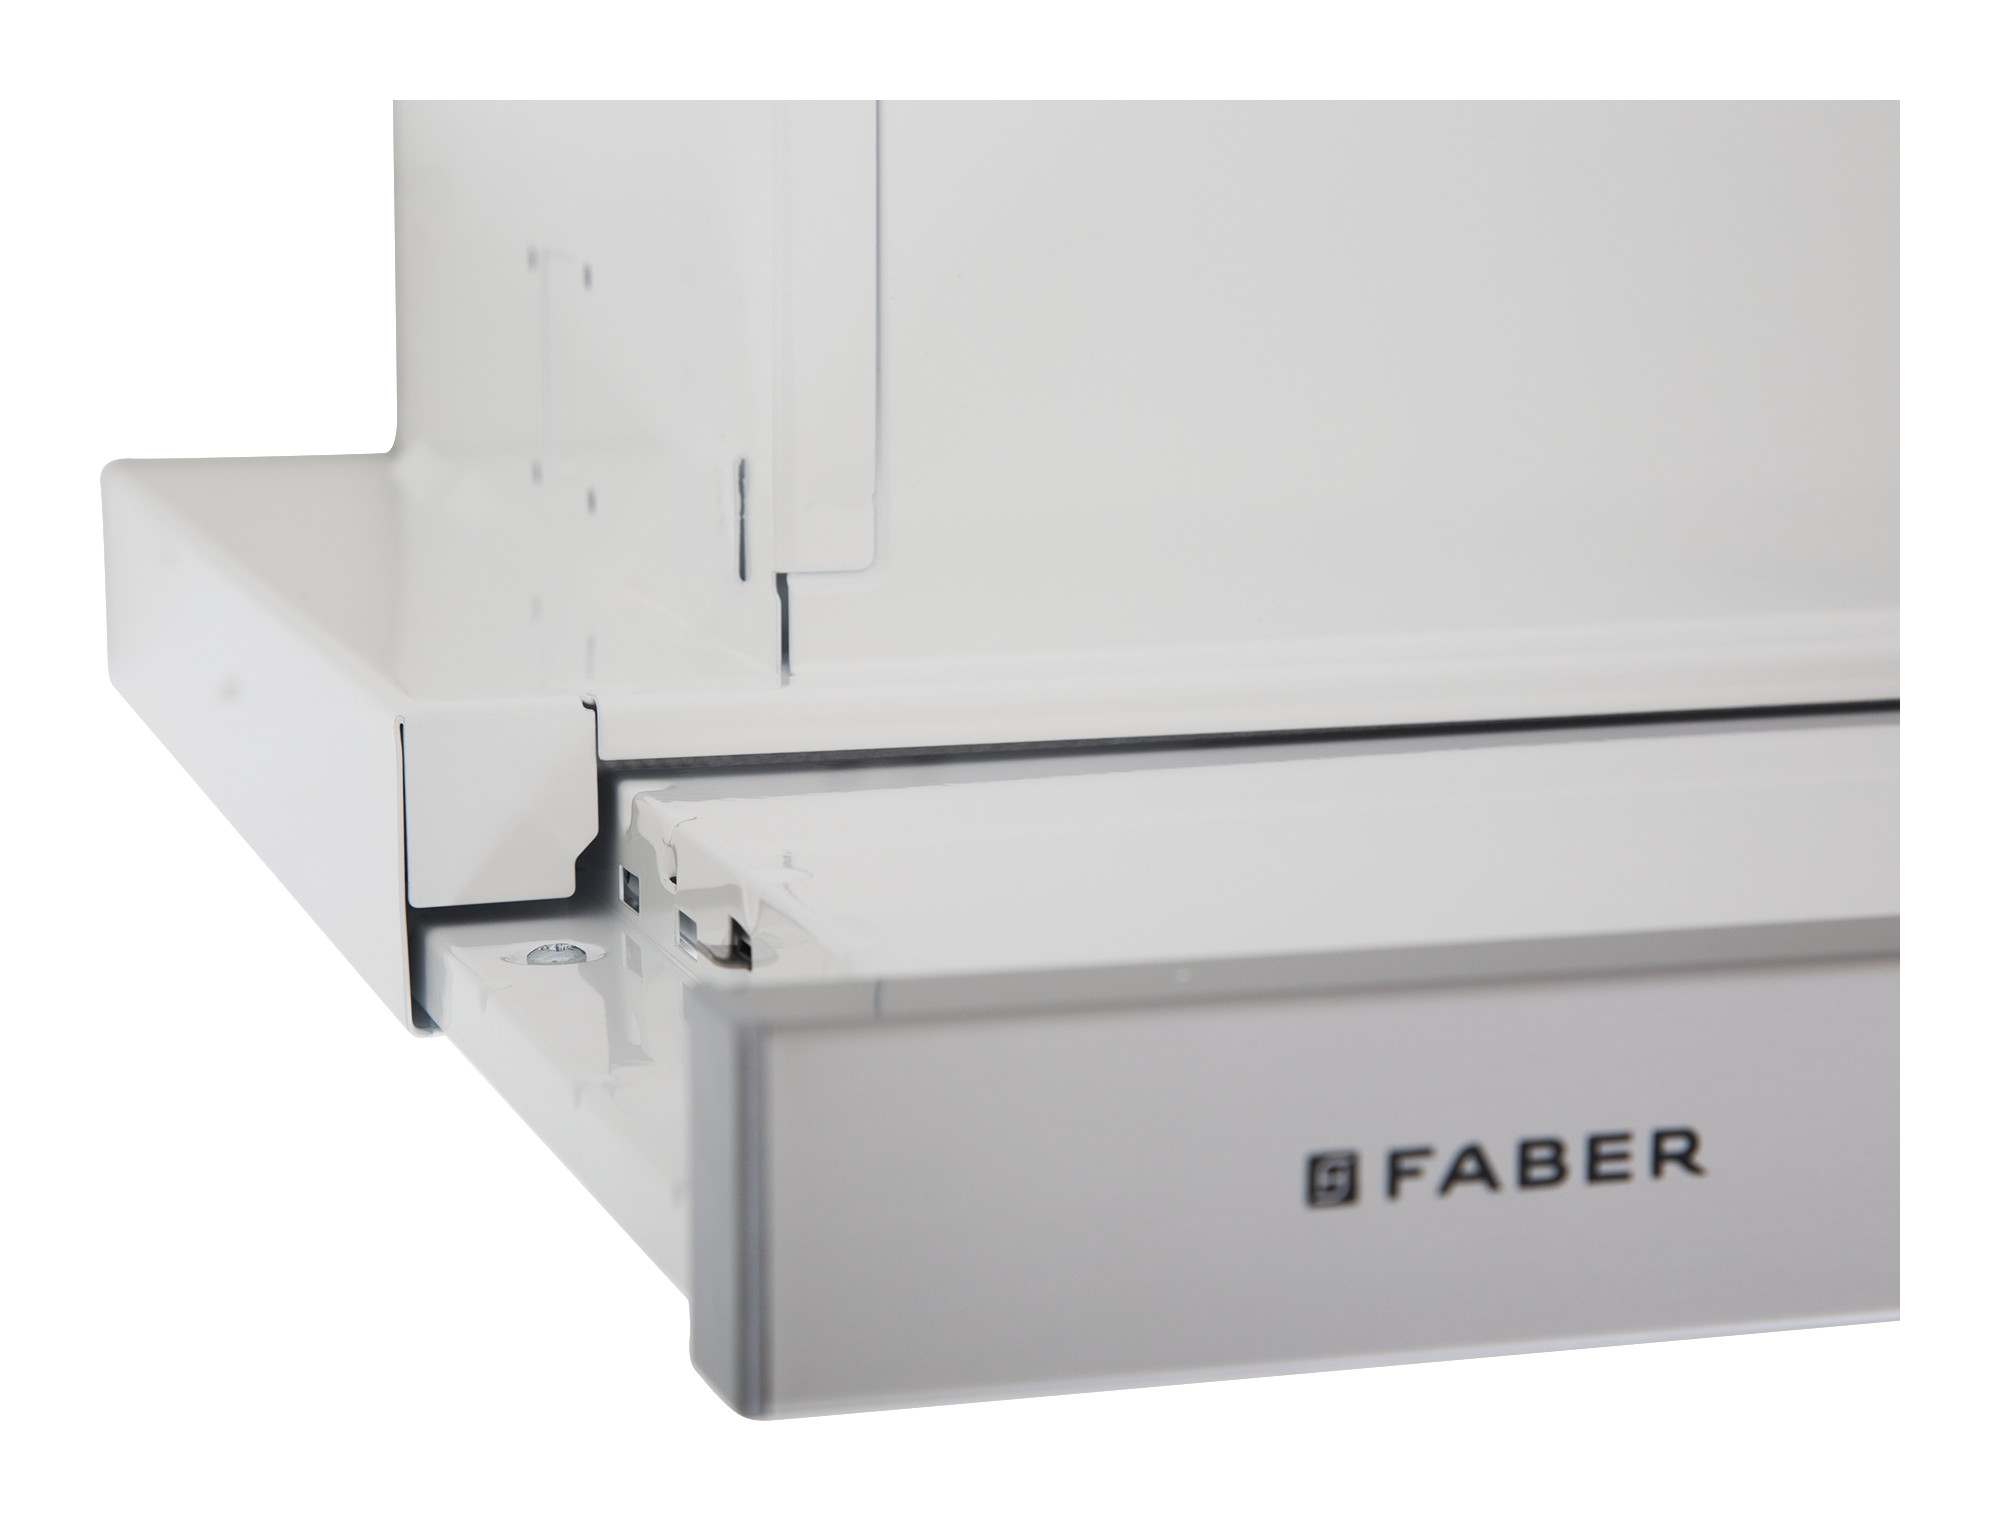 Кухонная вытяжка Faber FLEXA NG W/X A60 отзывы - изображения 5